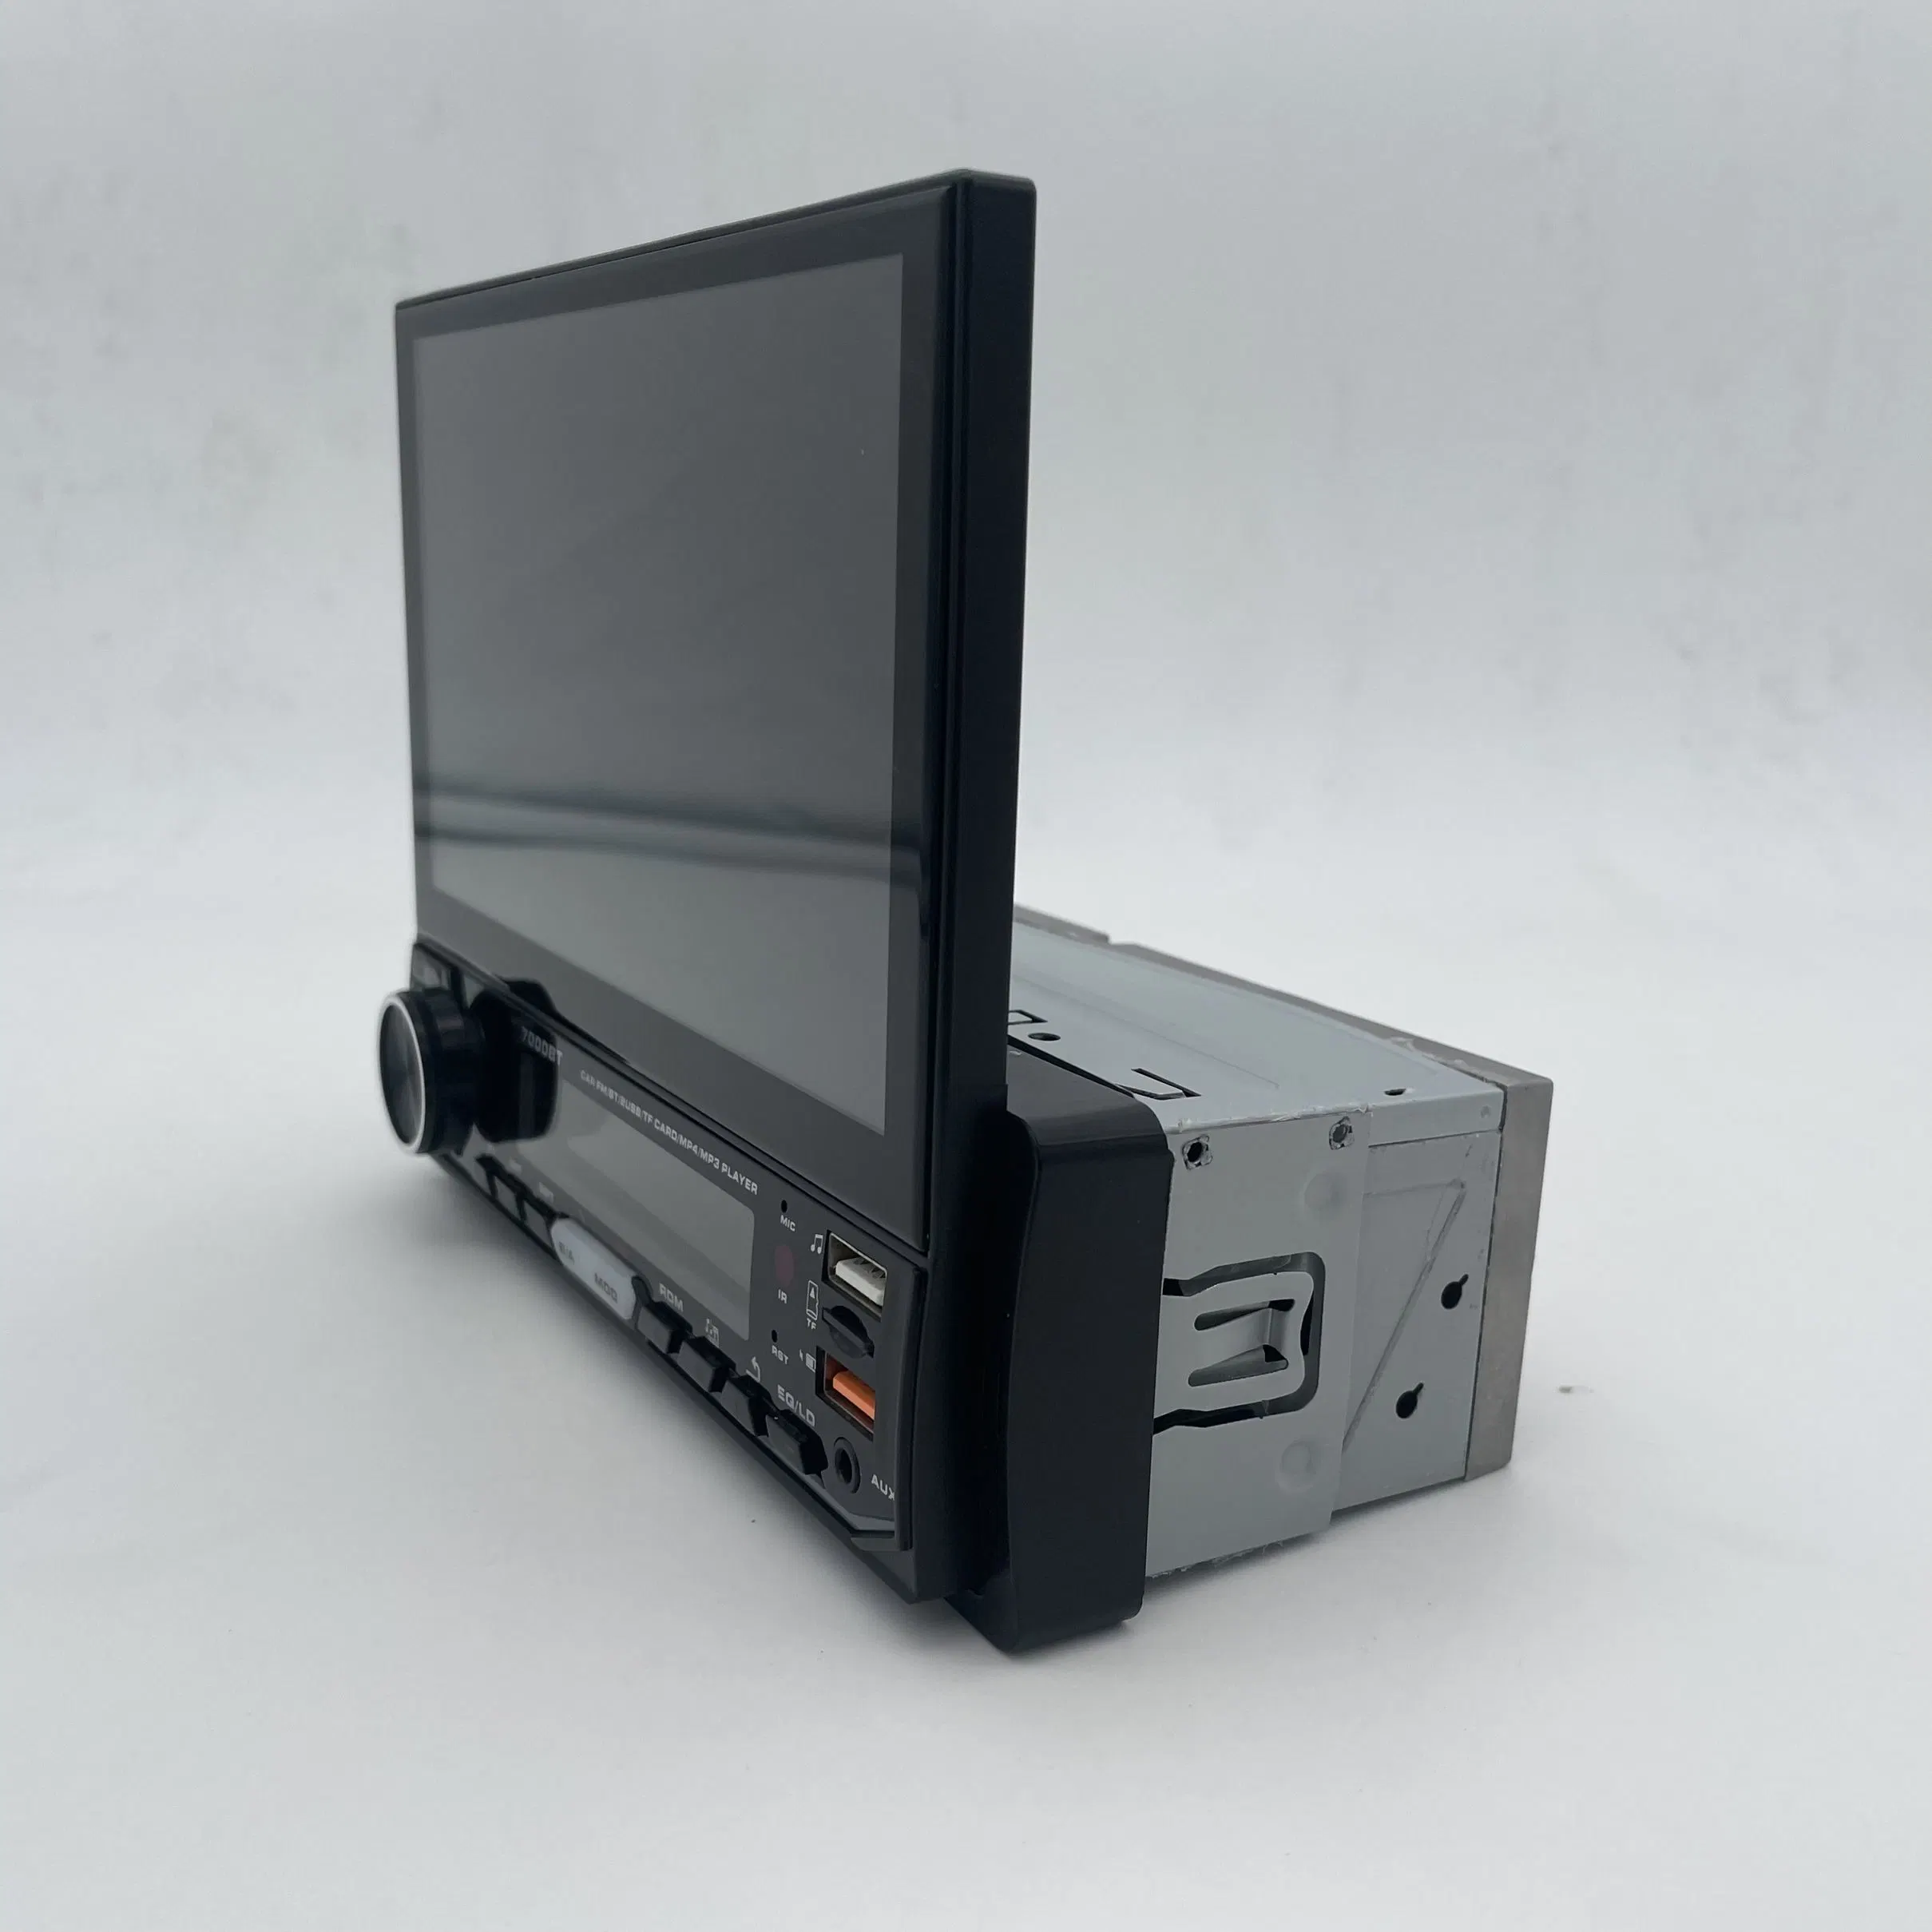 Аудиосистема 1DIN Авто складной MP5 проигрыватель мультимедиа 7дюйм салонной стереосистемы видео DVD плеер